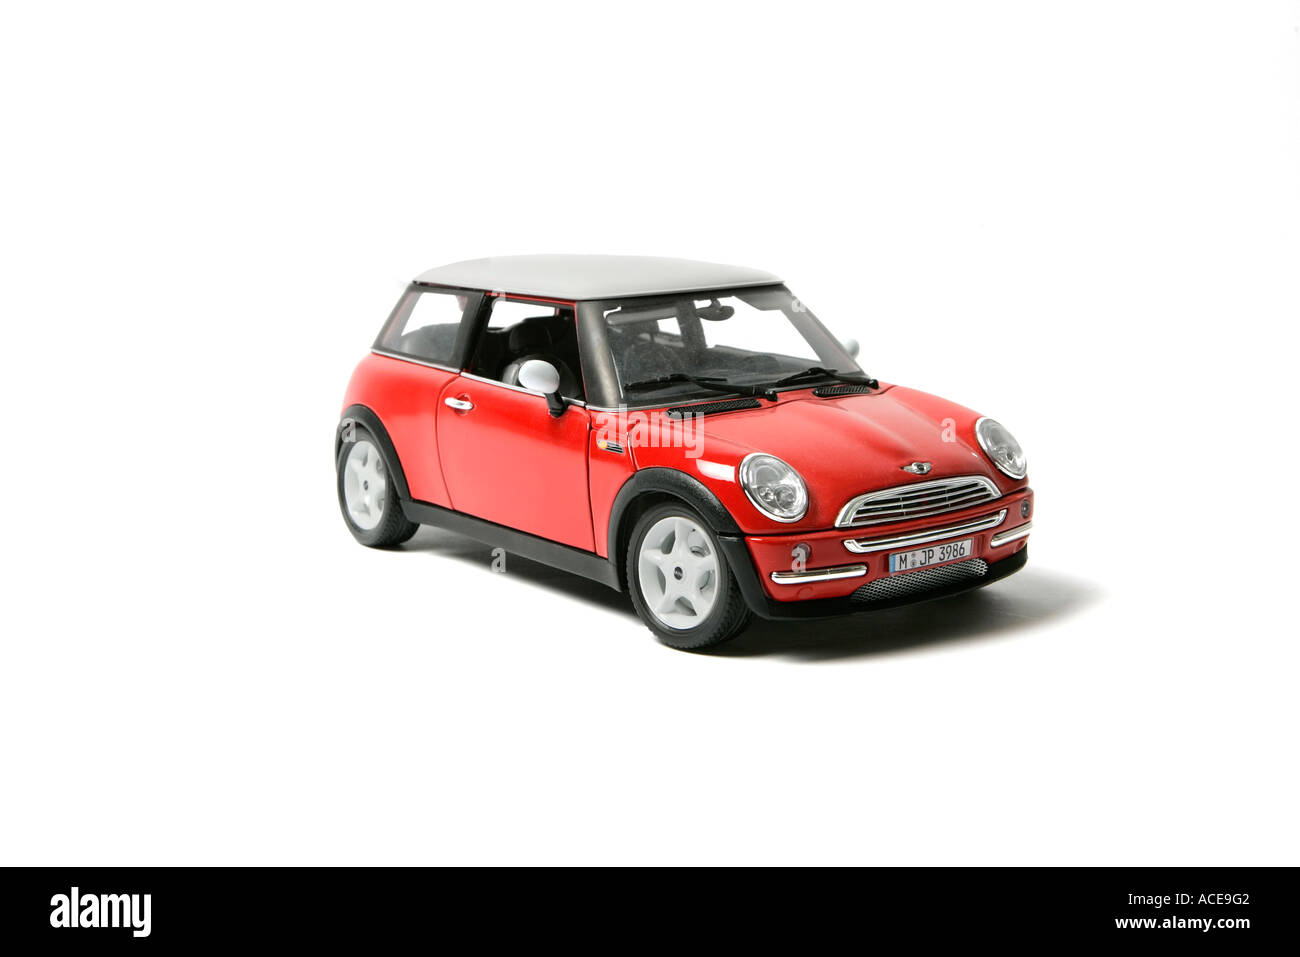 Toy mini cooper immagini e fotografie stock ad alta risoluzione - Alamy